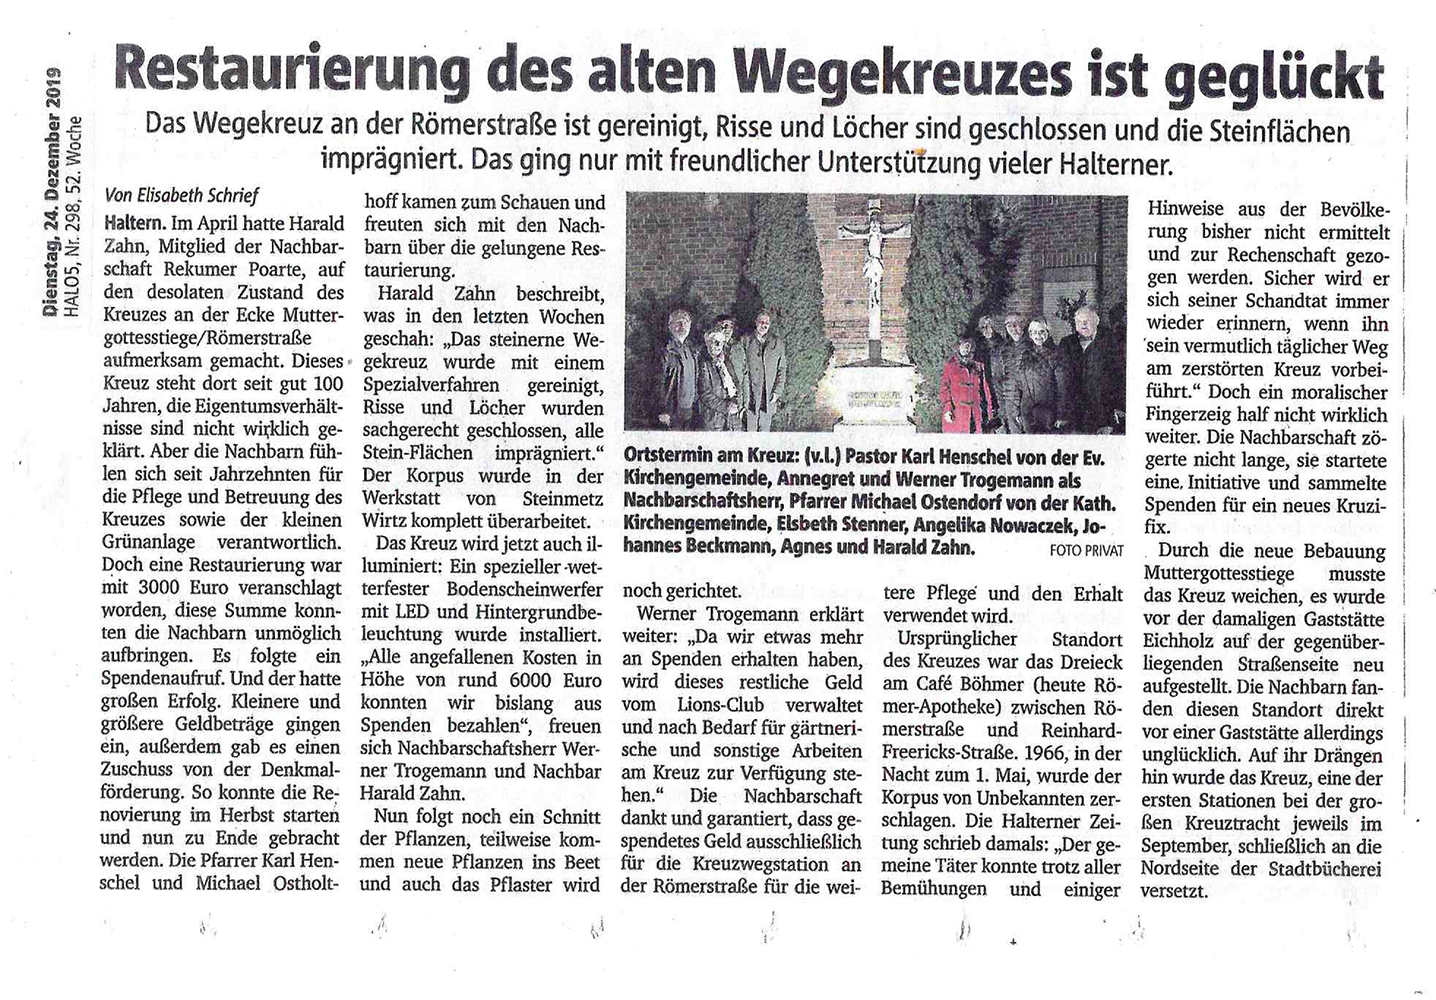 Bild: Sanierung Wegekreuz in Haltern am See durch Naturstein Biermann. Zeitungsartikel